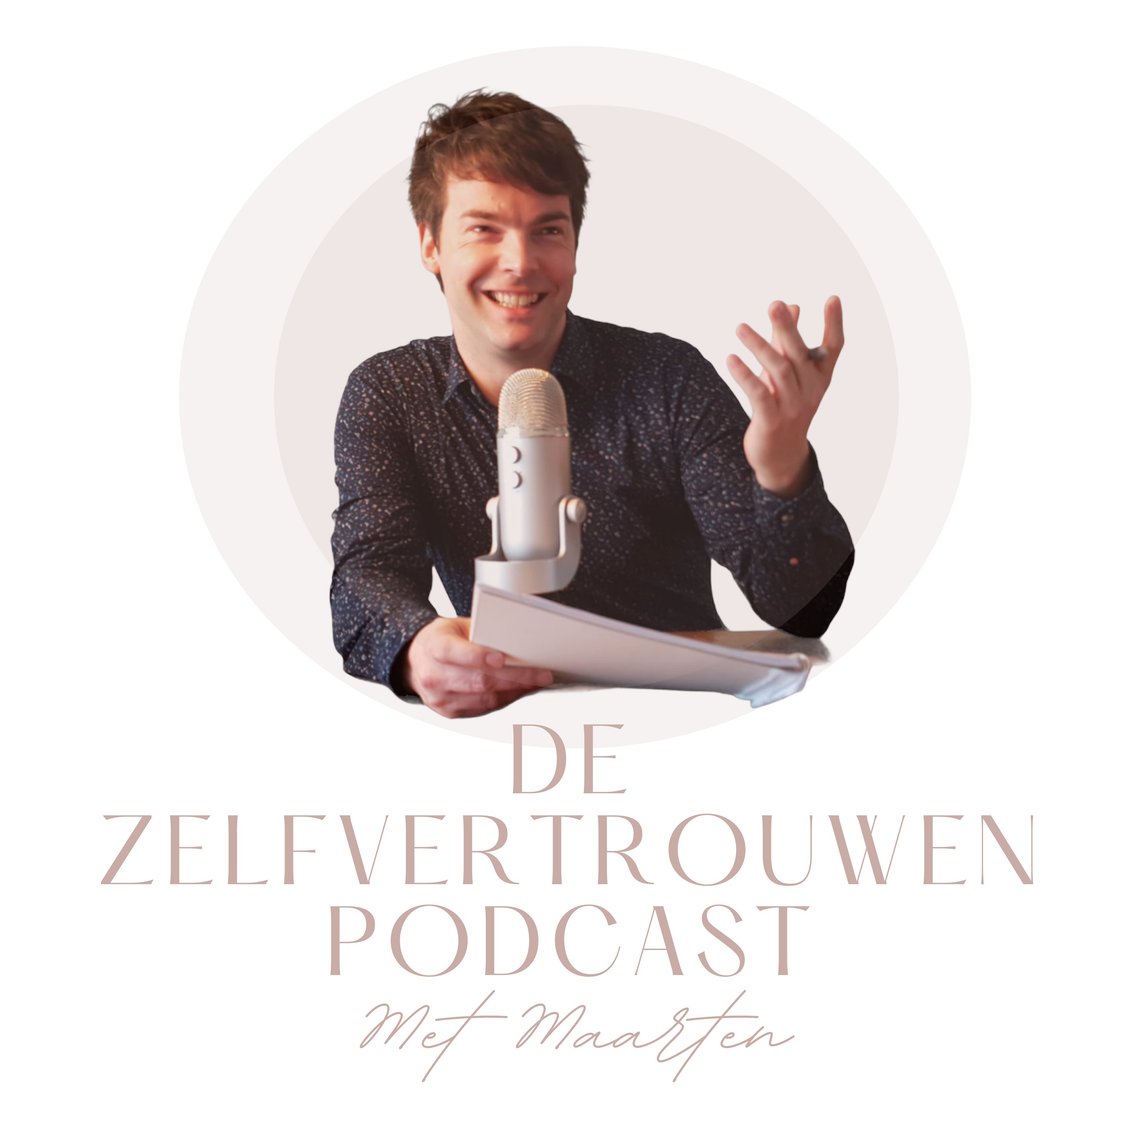 De Zelfvertrouwen Podcast - Met Maarten Vogelaar - Cover Image